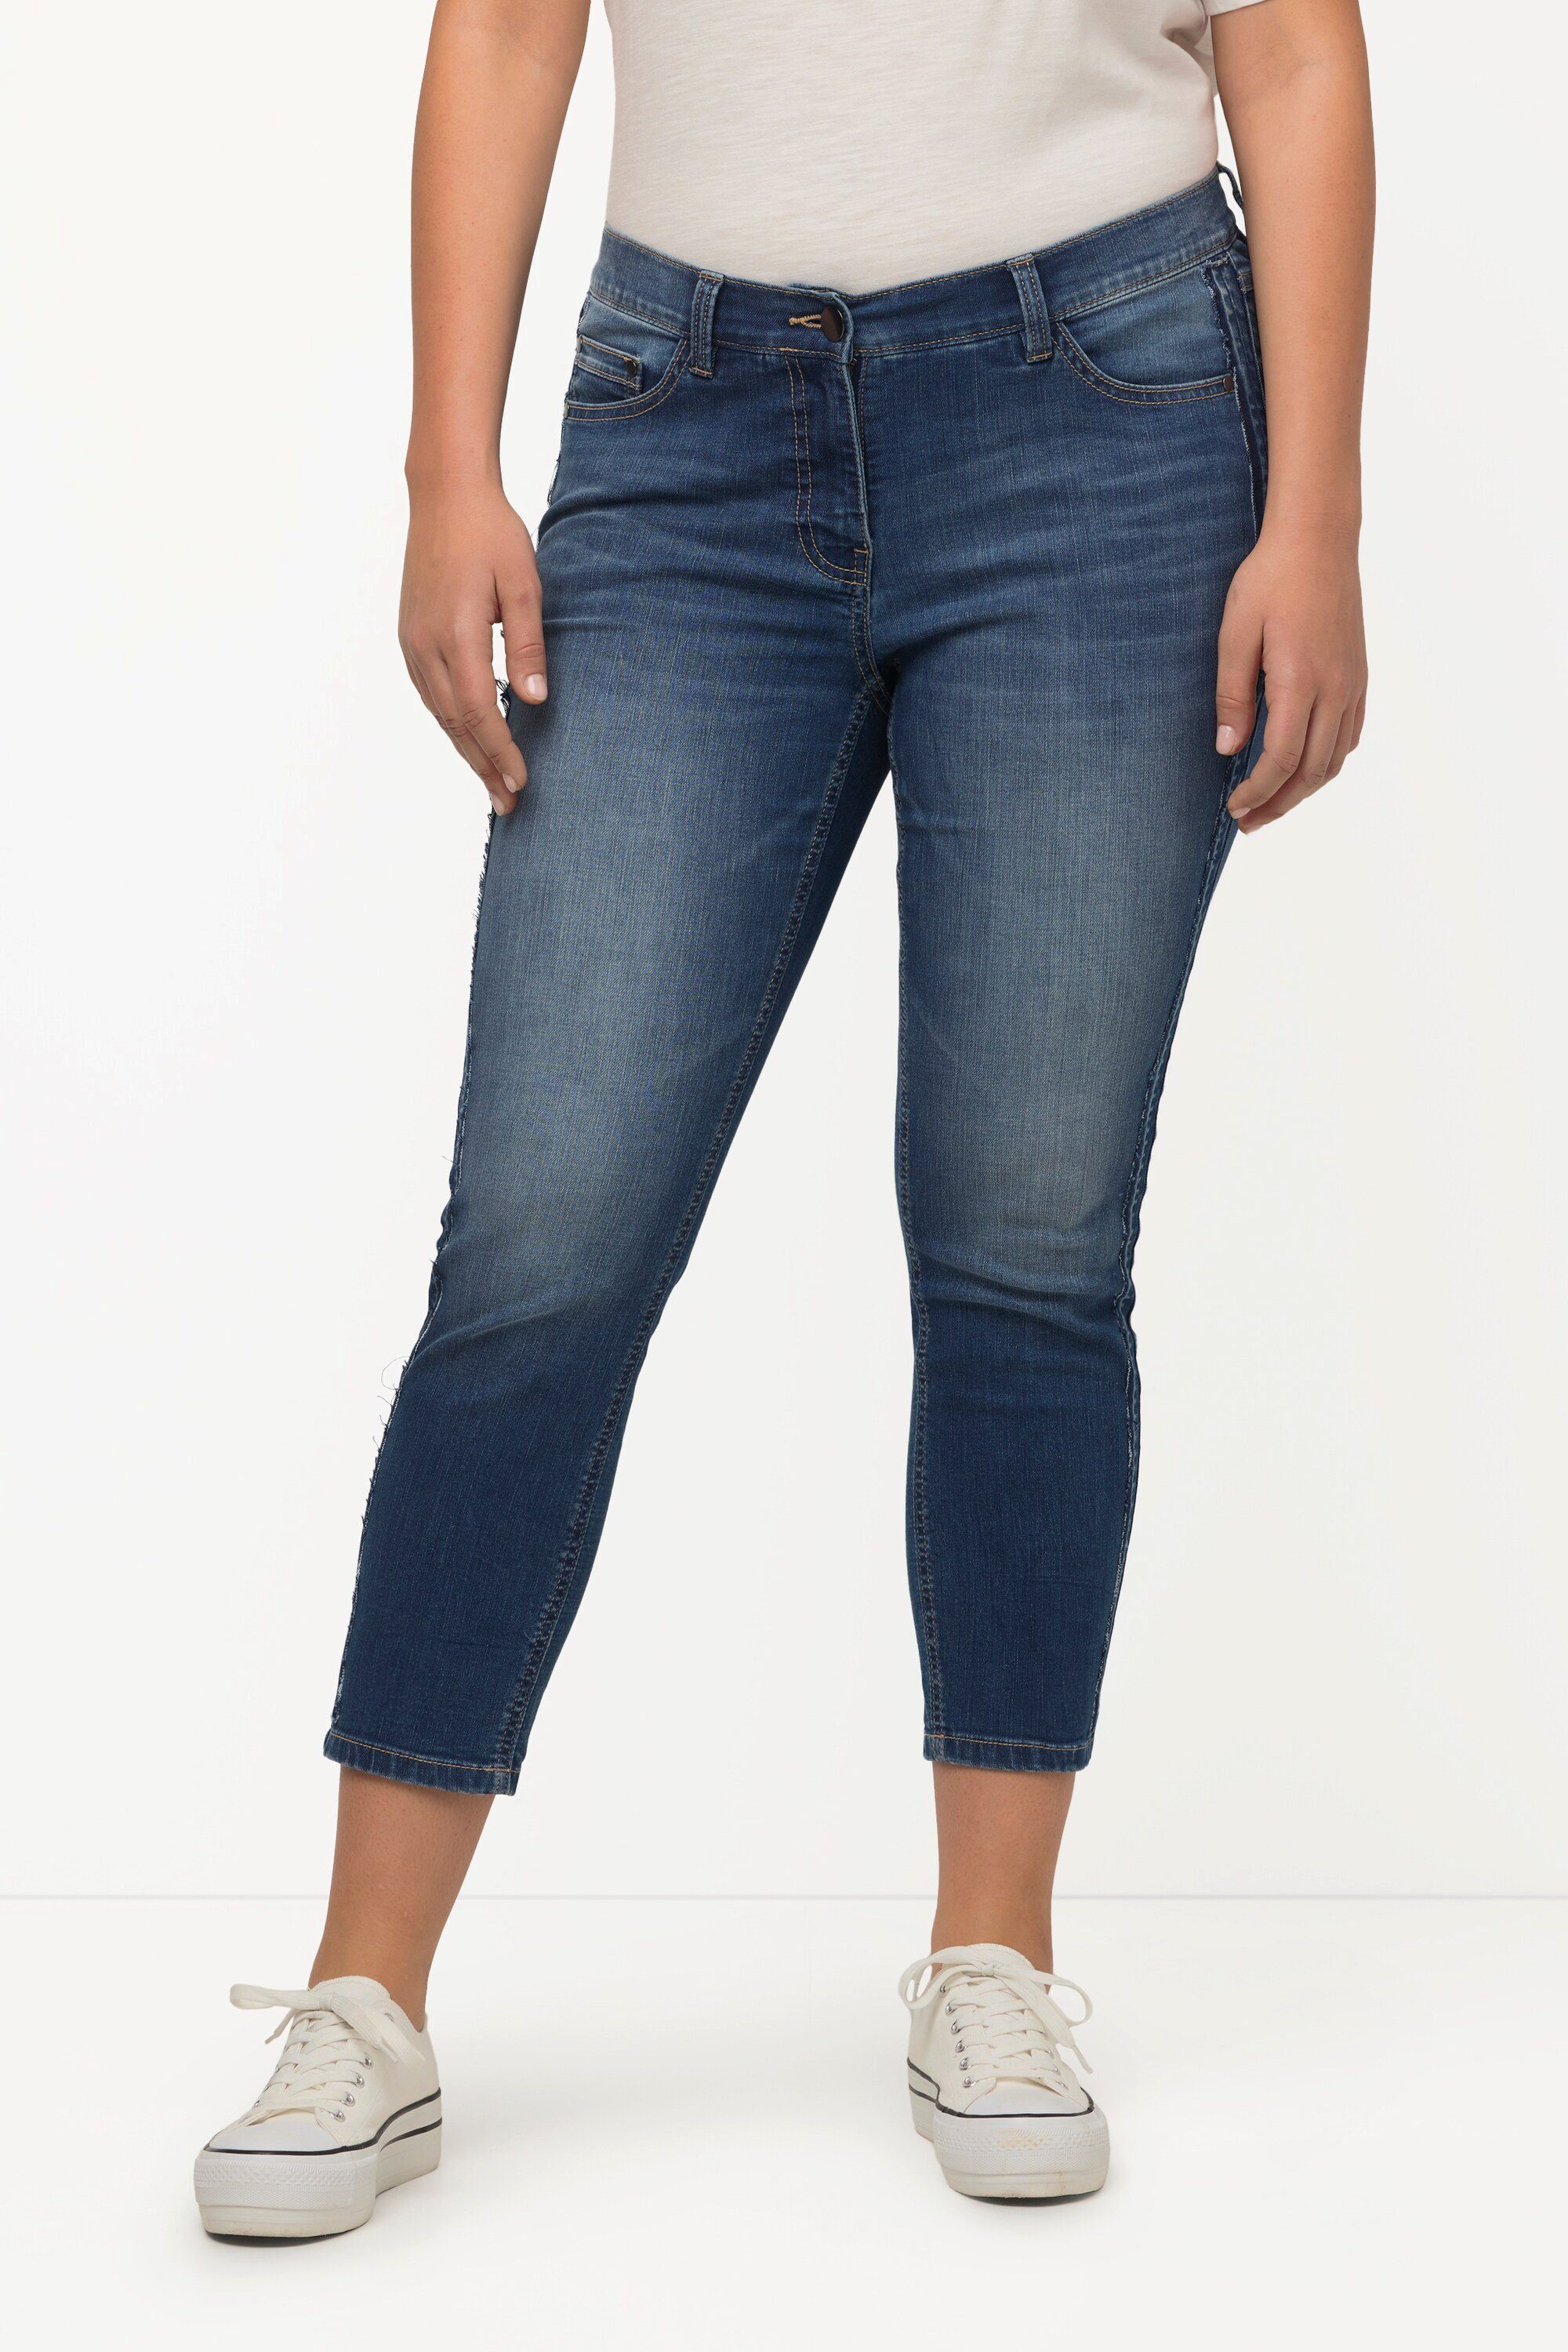 Top-Verkaufstipp Ulla Popken Regular-fit-Jeans schmales Jeans Waist recycelt High Sarah Bein